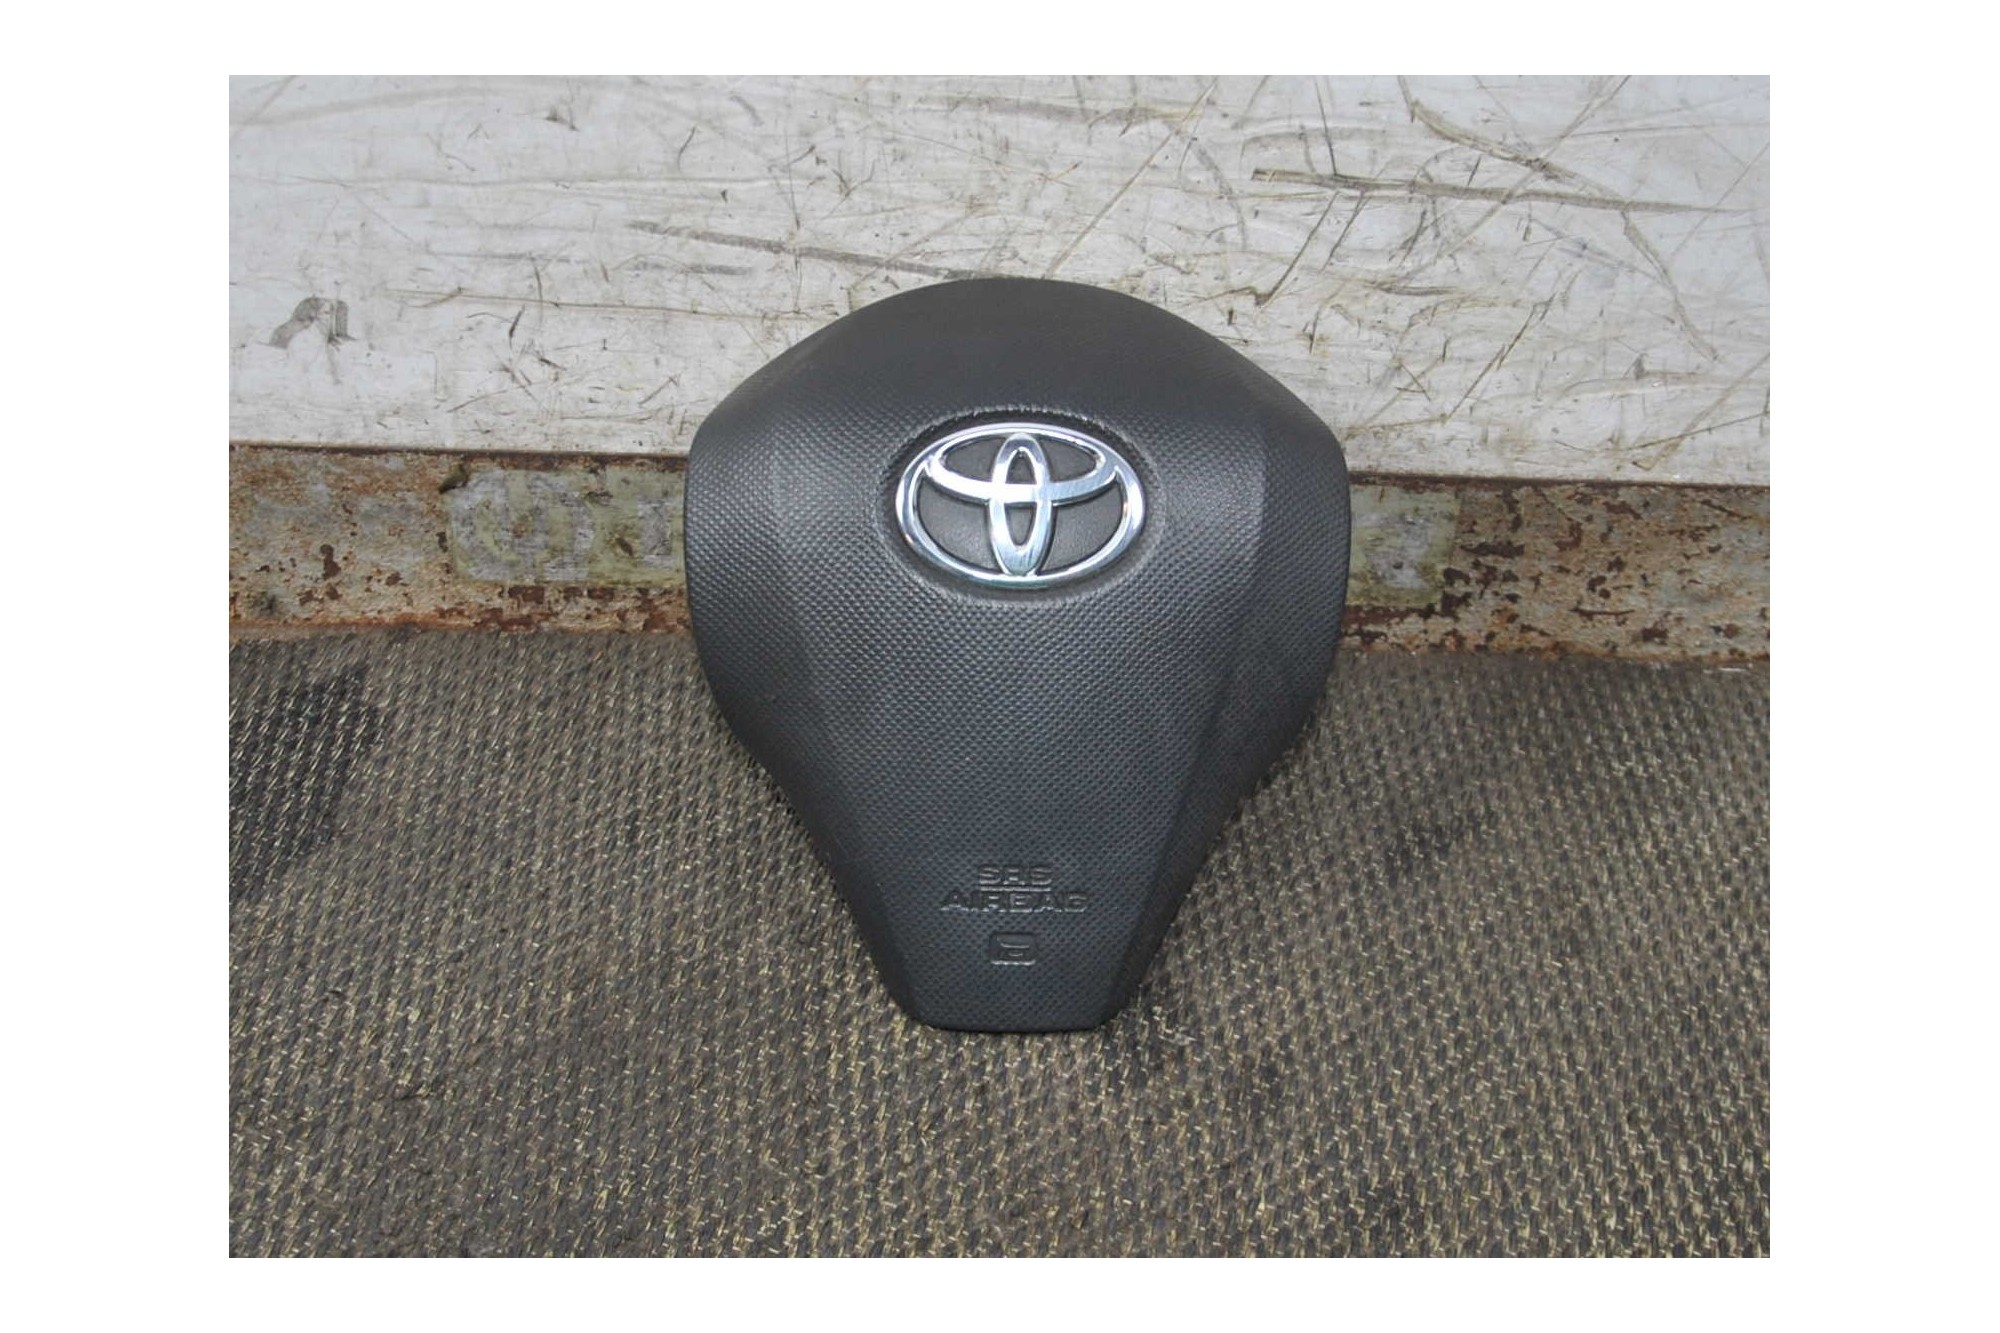 Airbag volante Toyota Yaris dal 2005 al a 2011 Cod 45130-0D160-G  2411111151921